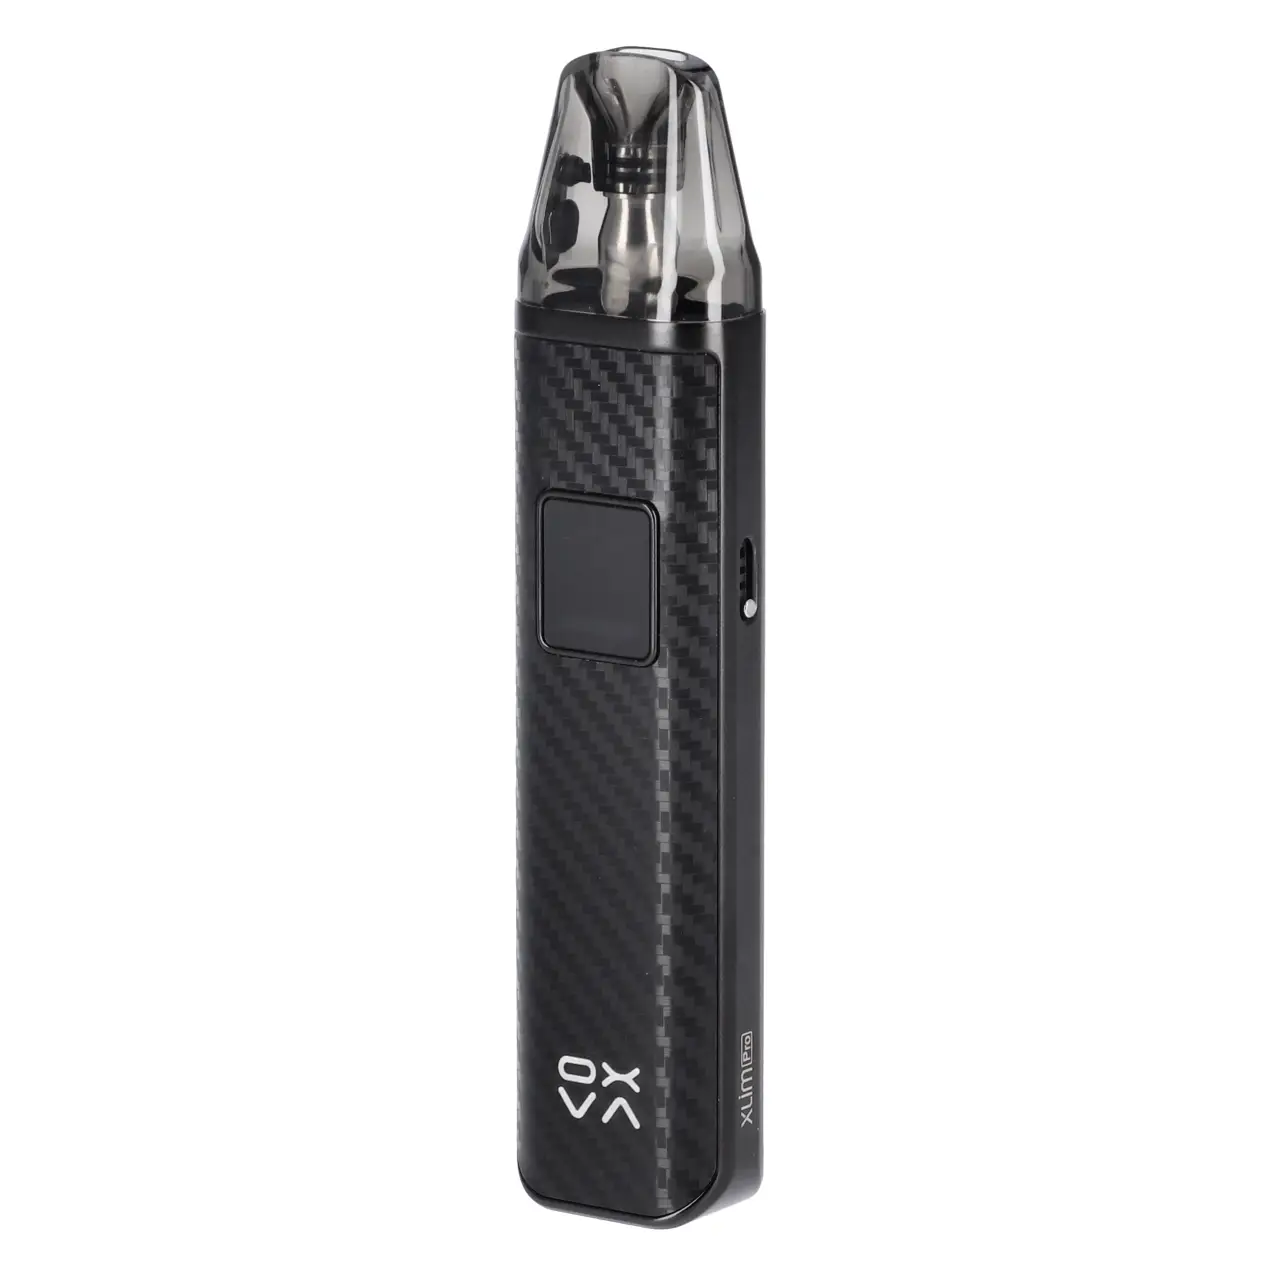 Oxva Xlim Pro E-Zigarette in Carbon Black von schräg vorne